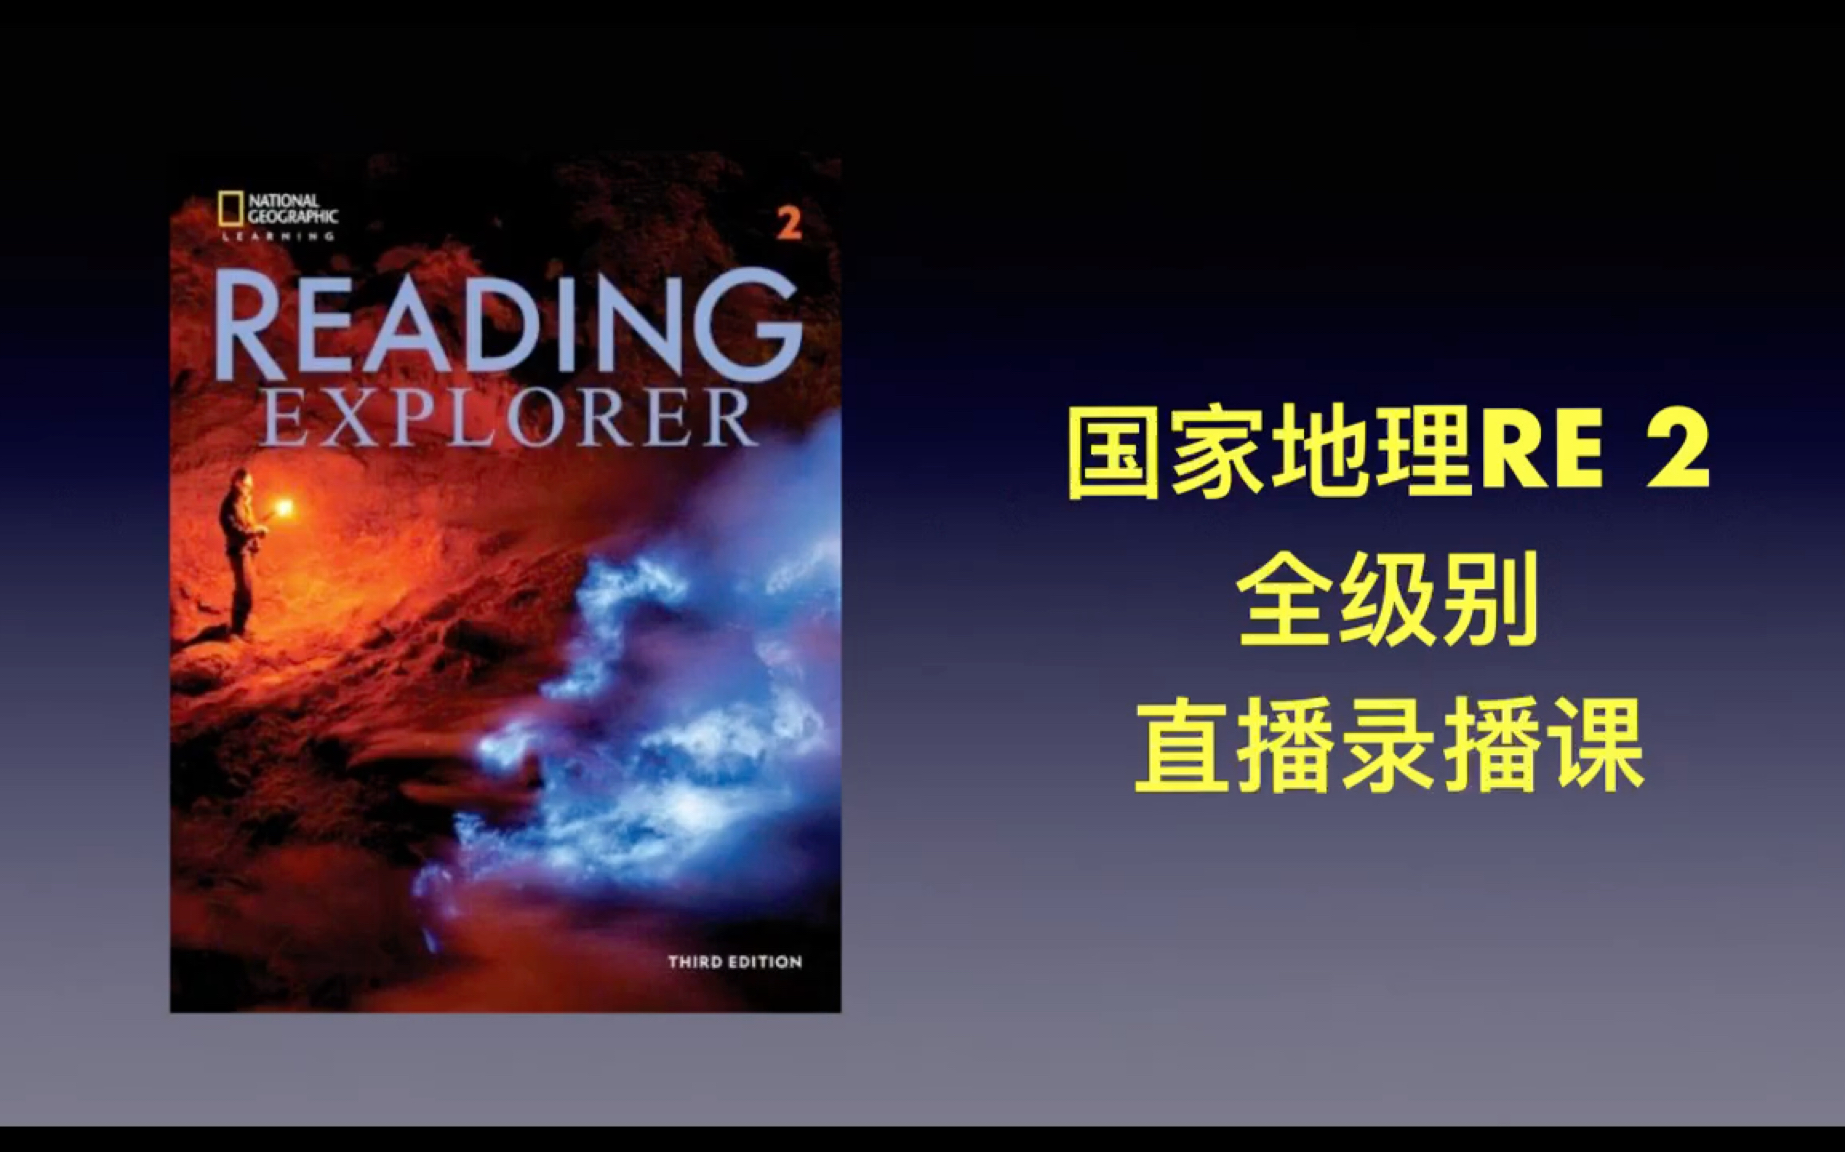 原版教材 国家地理 reading explorer 2 u2 阅读精讲学习营